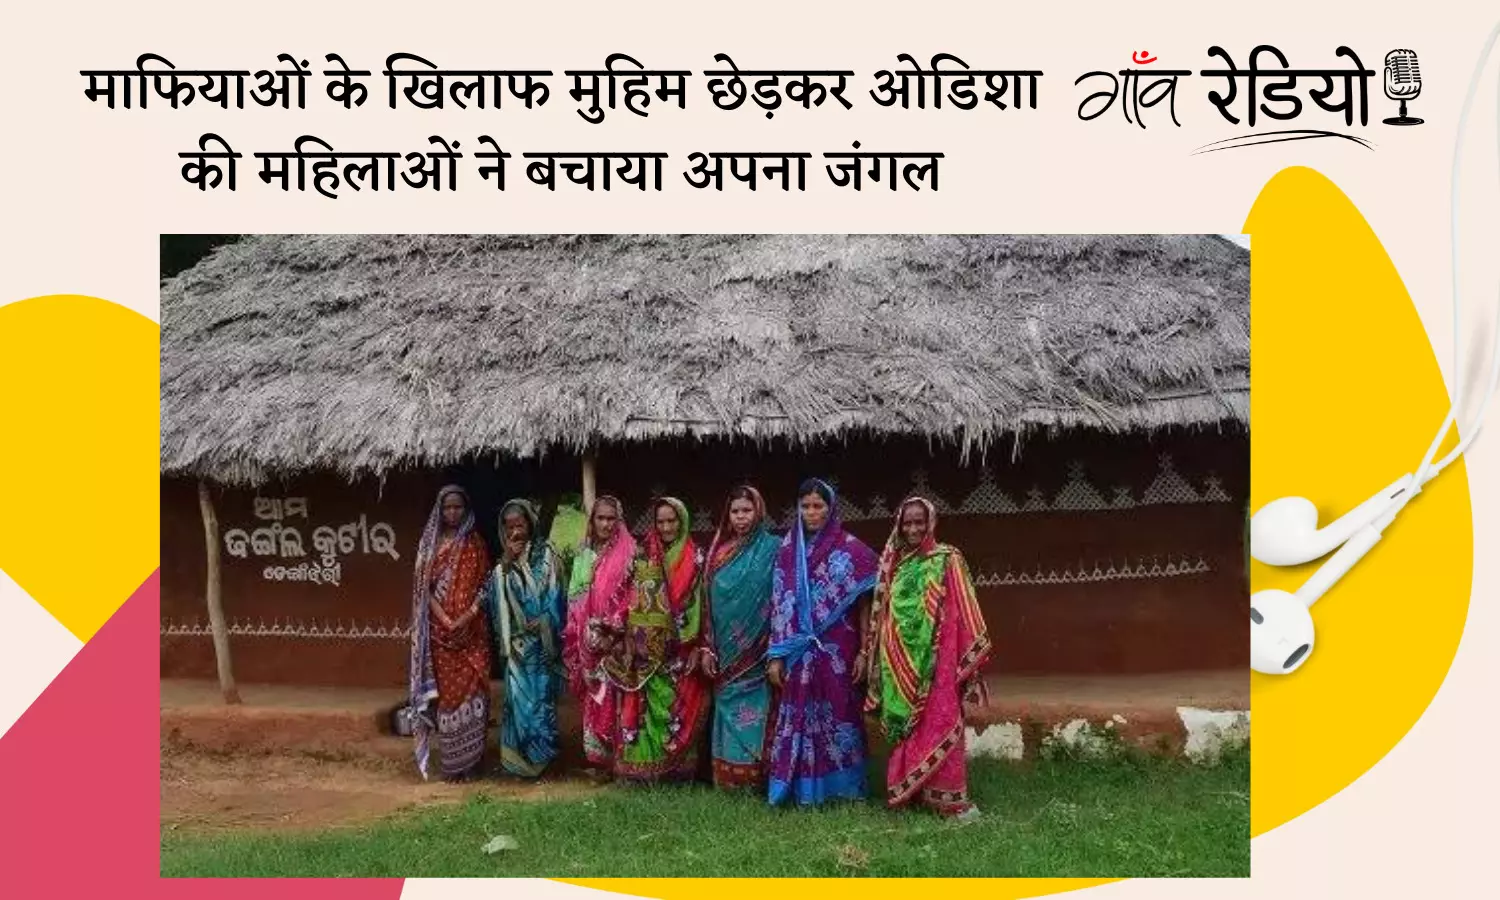 Gaon Radio: माफियाओं के खिलाफ मुहिम छेड़कर ओडिशा की महिलाओं ने बचाया अपना जंगल